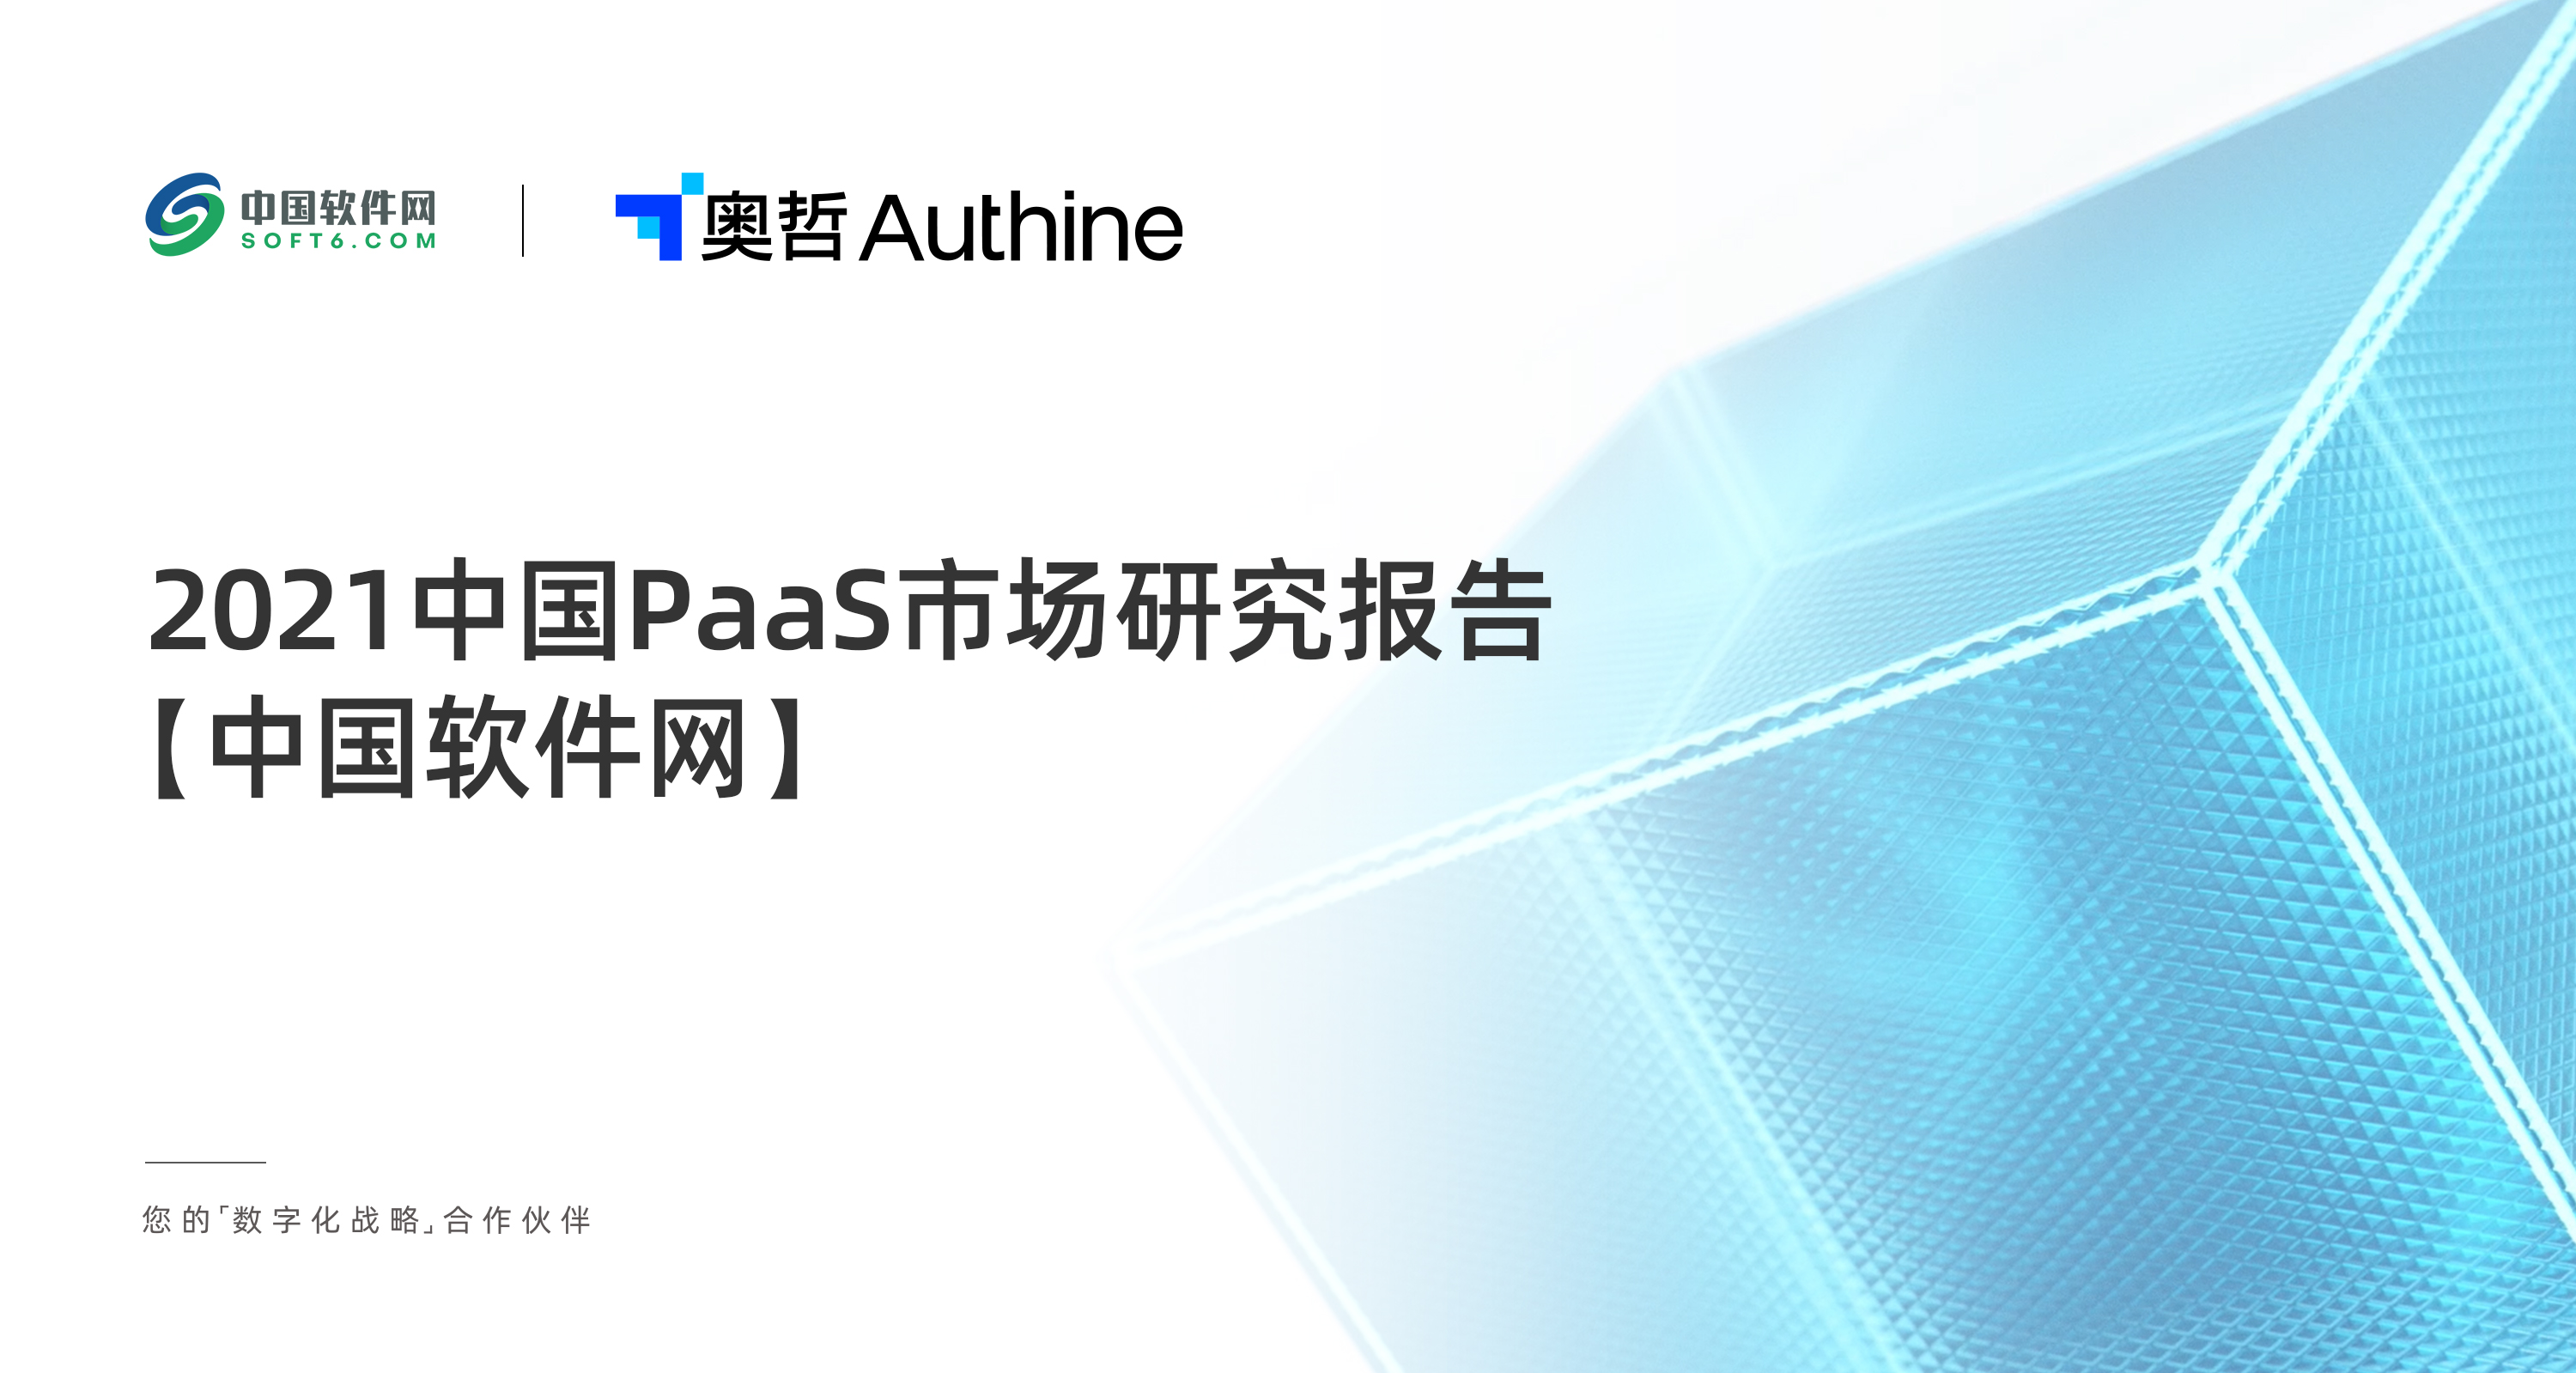 2021 中国PaaS市场研究报告-中国软件网